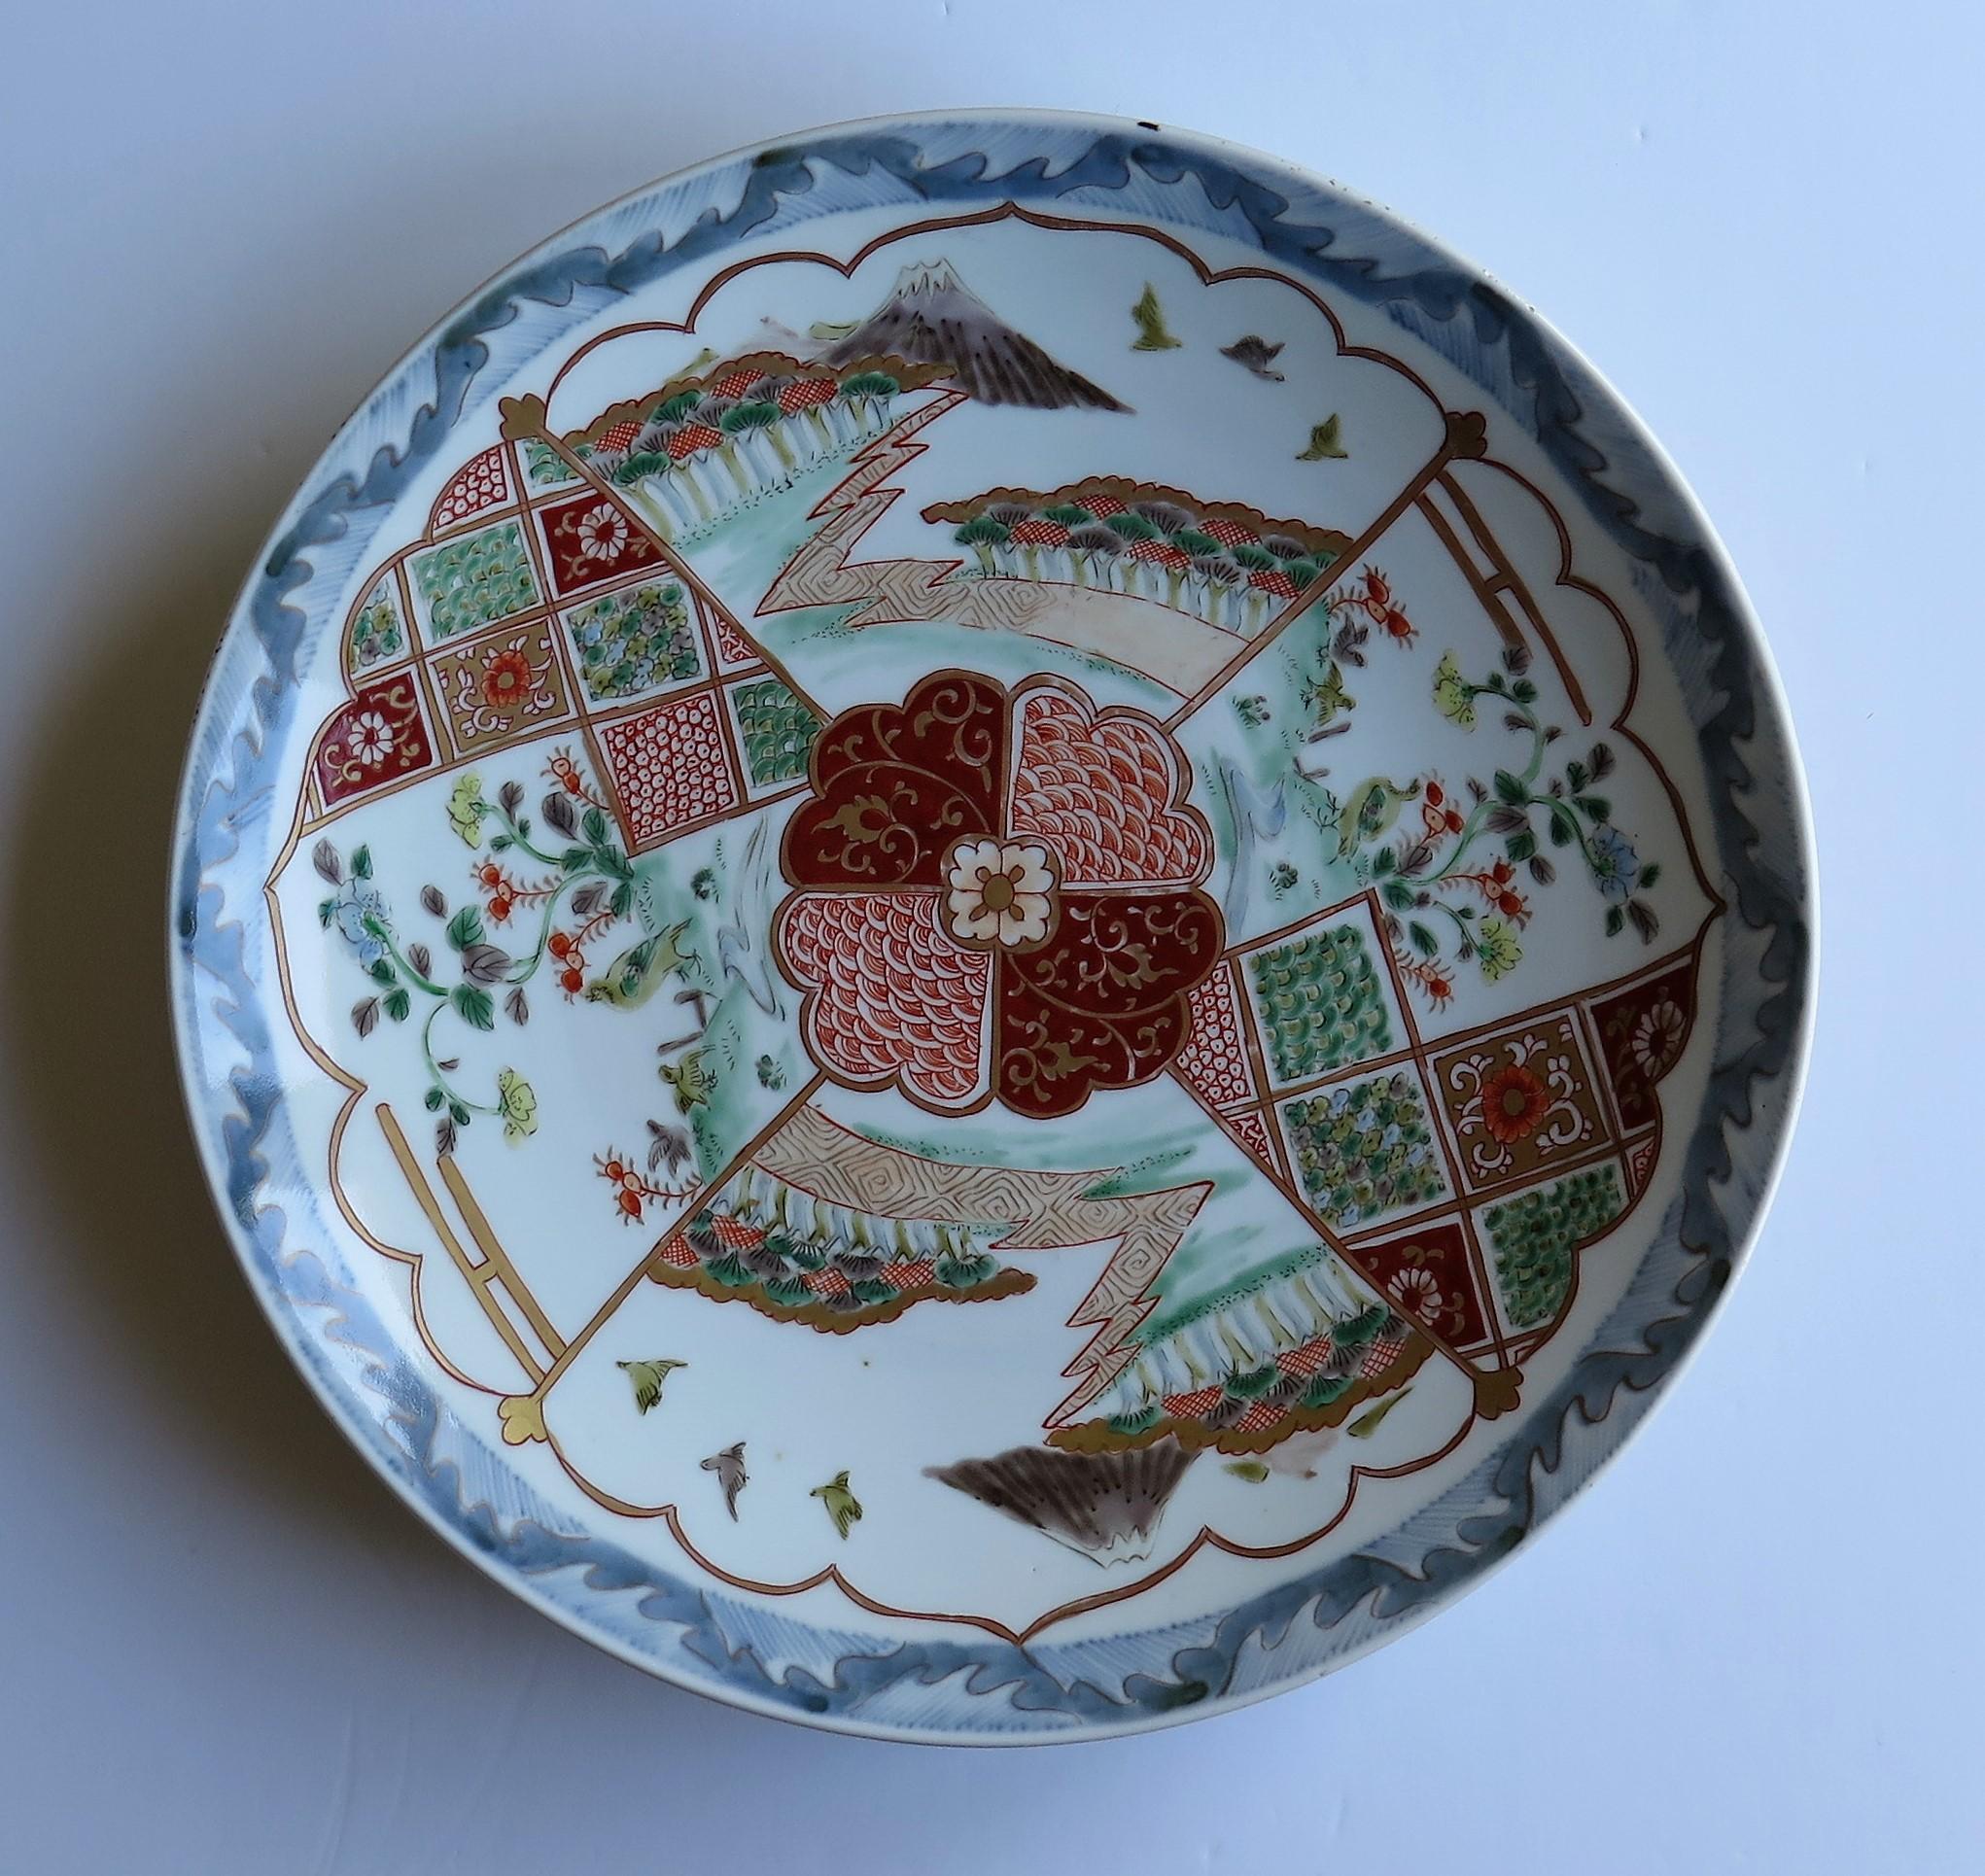 Il s'agit d'un excellent exemple de chargeur ou de très grande assiette en porcelaine japonaise avec un motif finement peint à la main, datant de la période Edo vers 1840 ou peut-être plus tôt.

Ce chargeur est un bel exemple de peinture à la main,